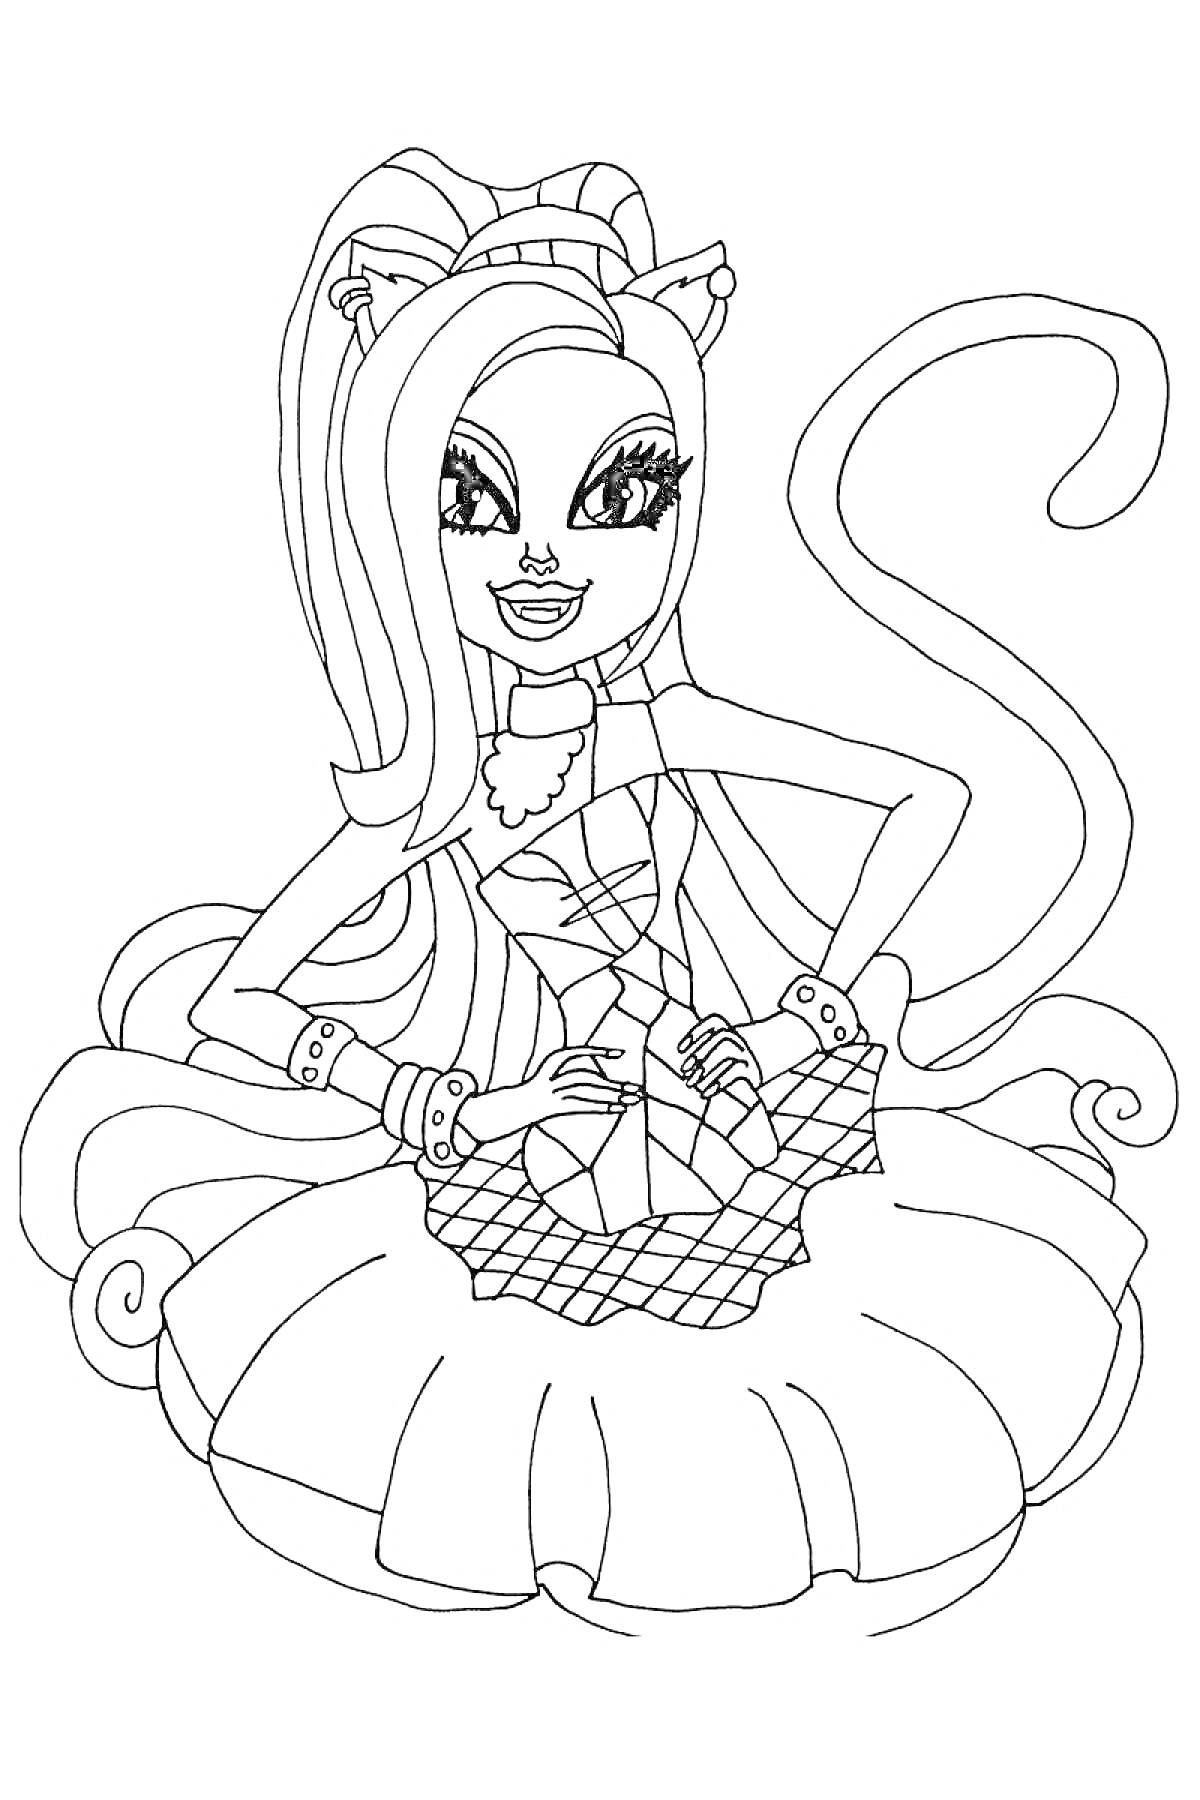 Девочка-кошка с длинными волосами, бантом на голове и хвостом, в платье с оборками и корсетной лентой.